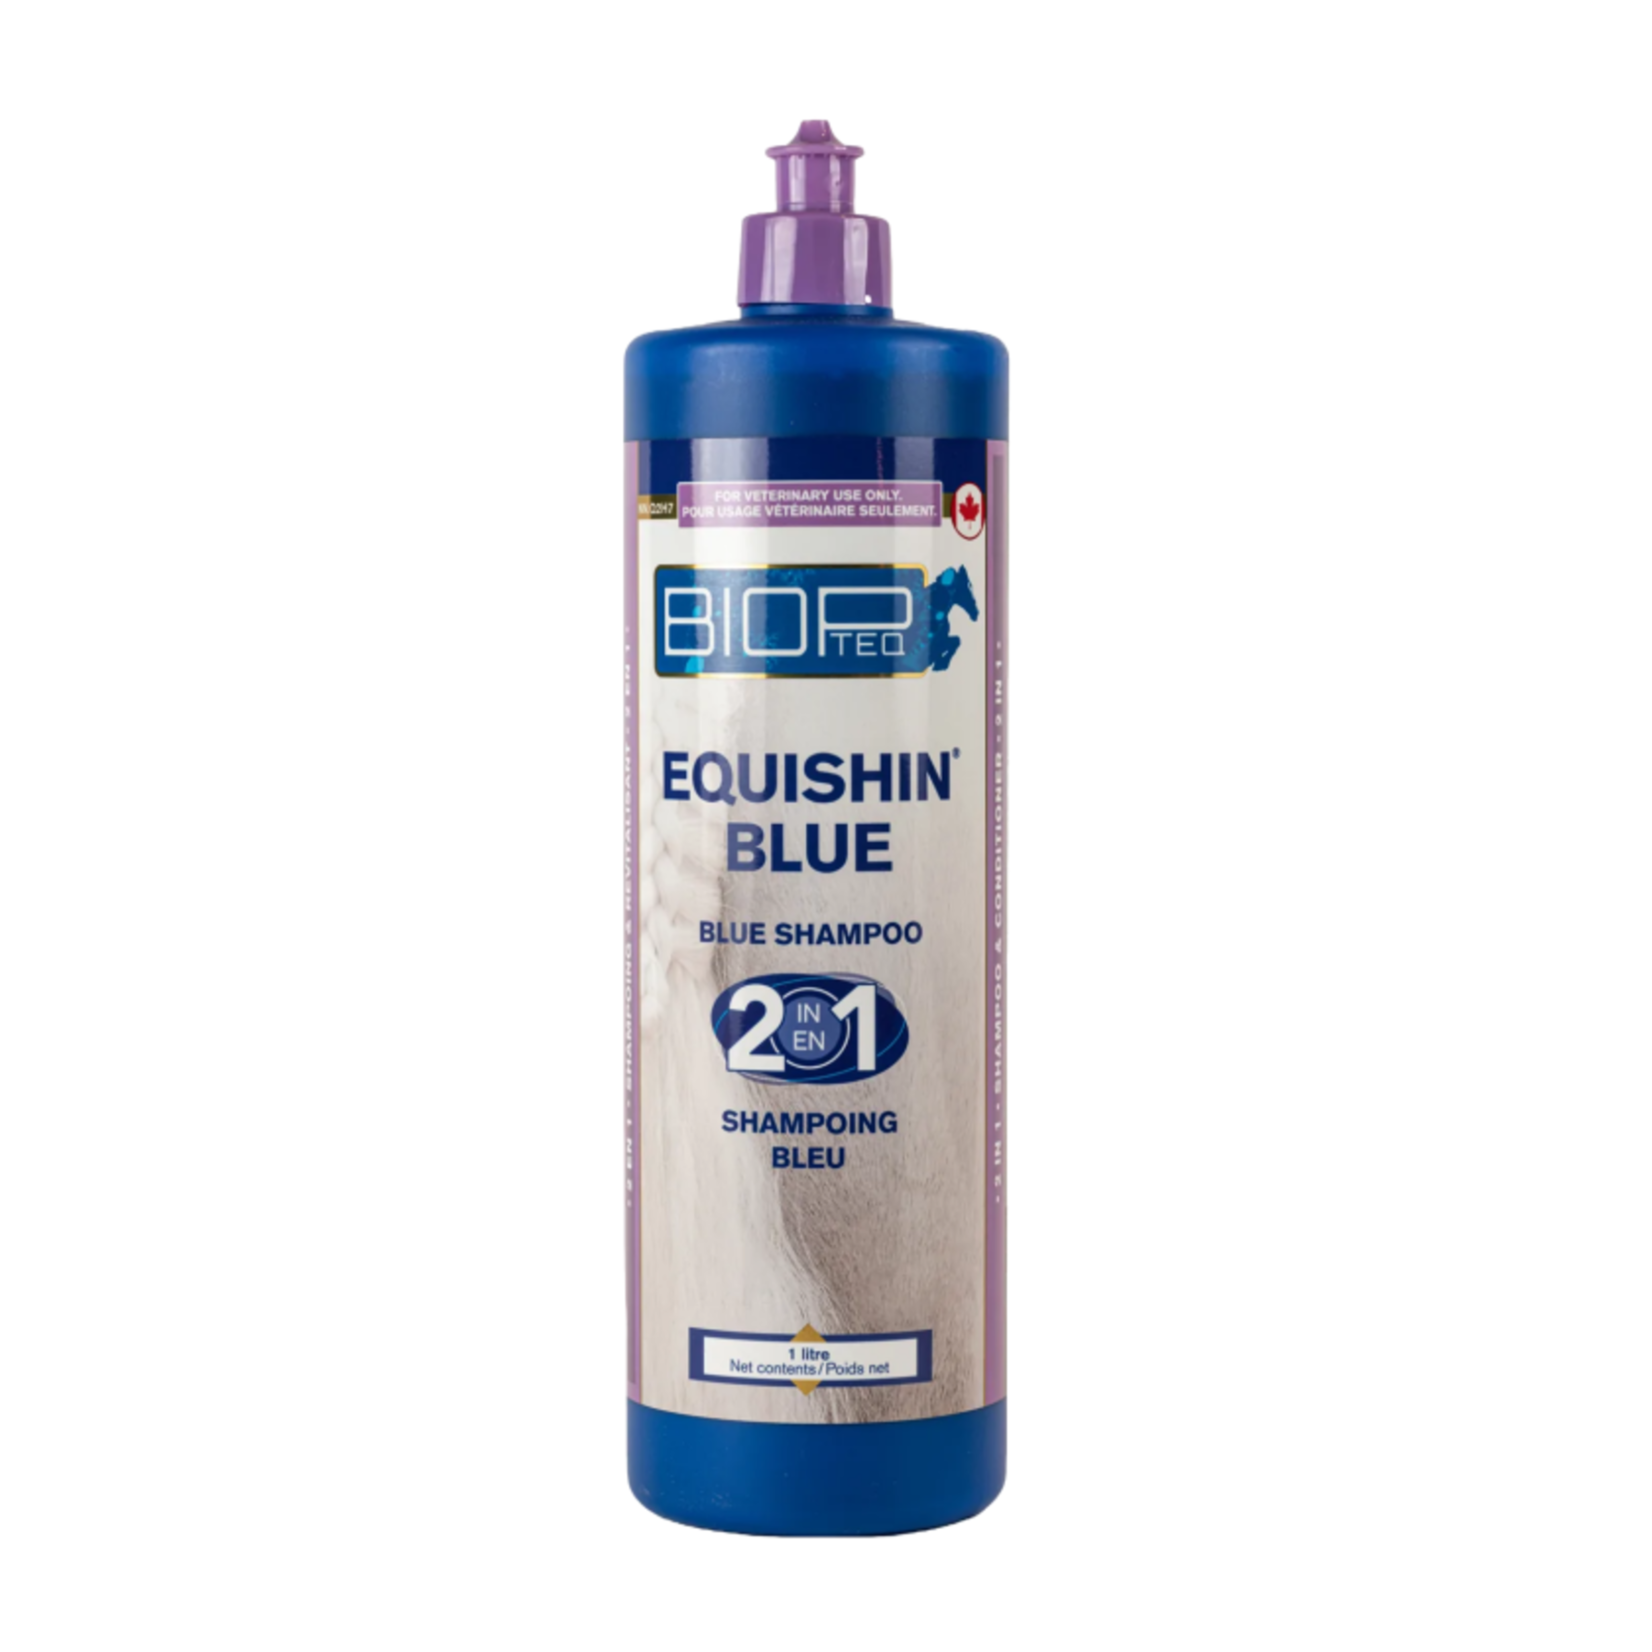 Biopteq Biopteq Shampoing bleu 2 en 1